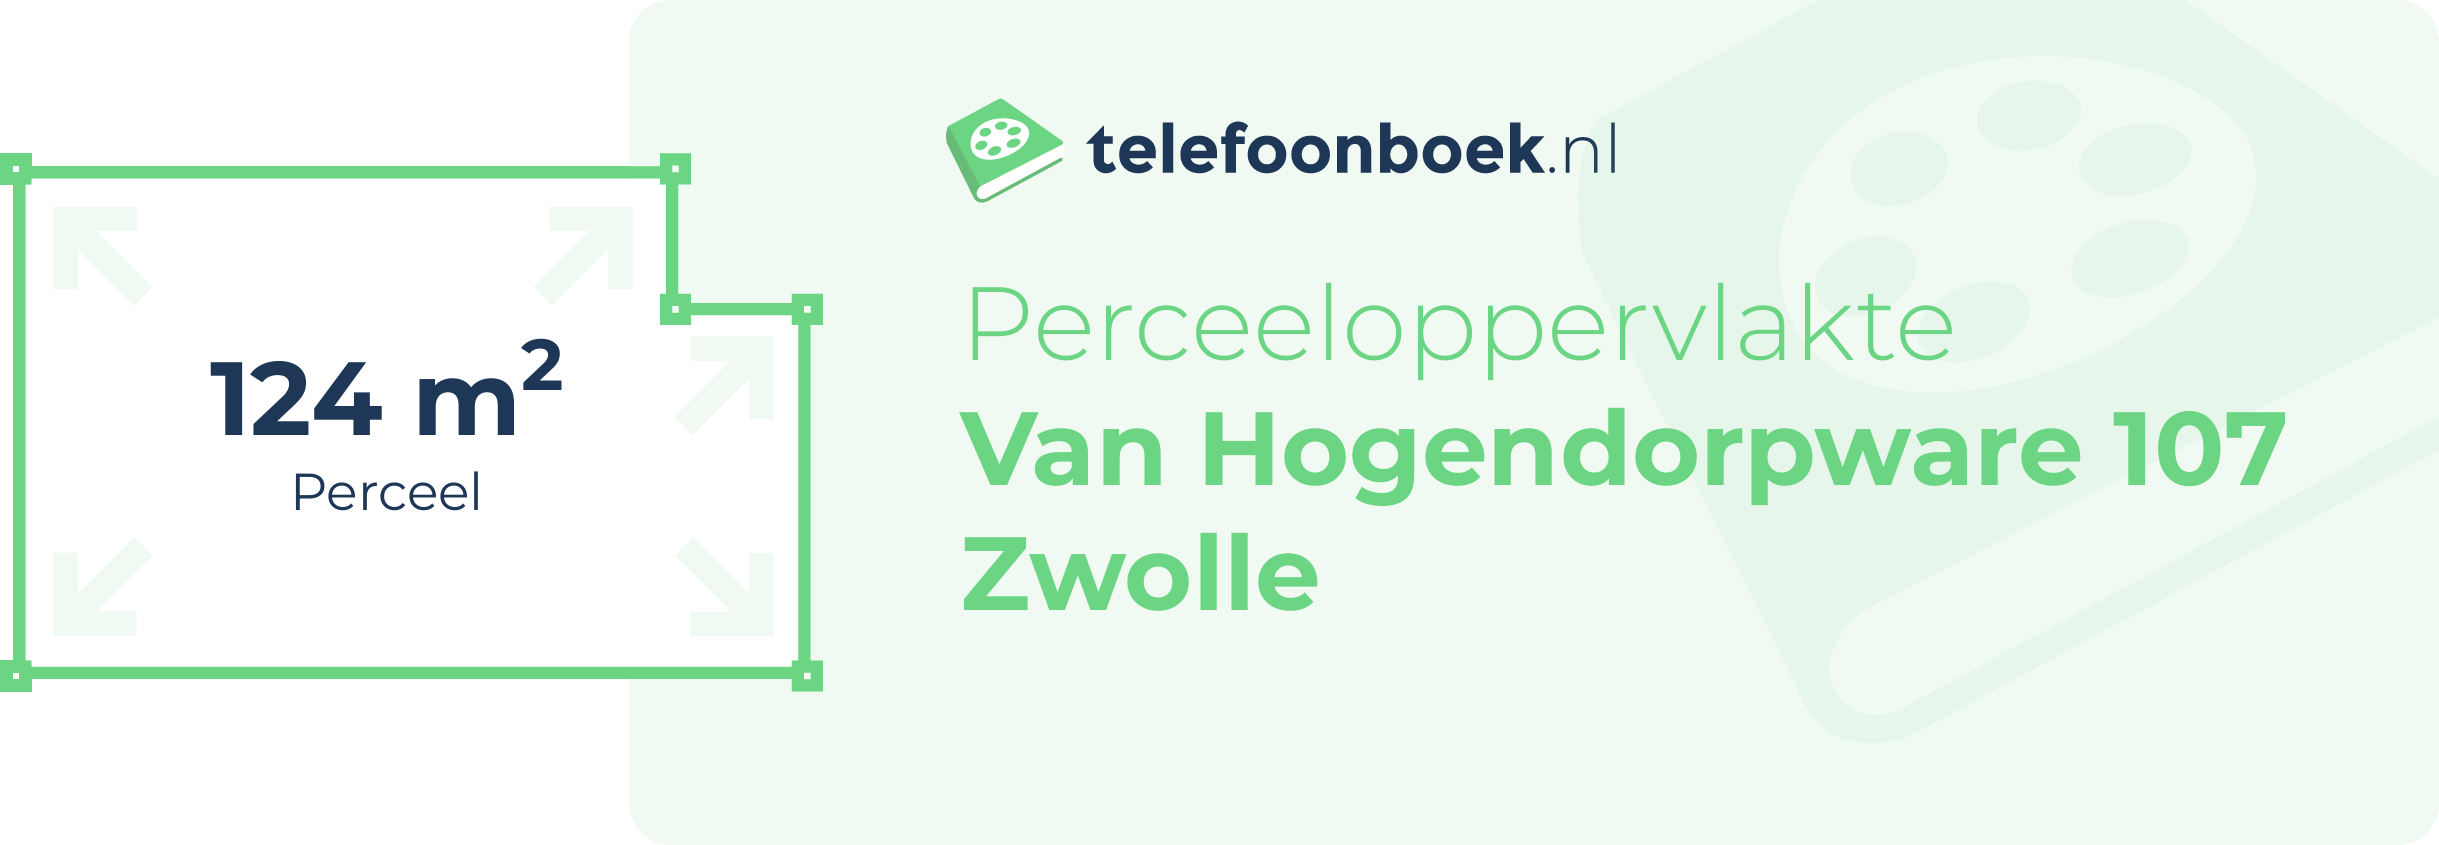 Perceeloppervlakte Van Hogendorpware 107 Zwolle